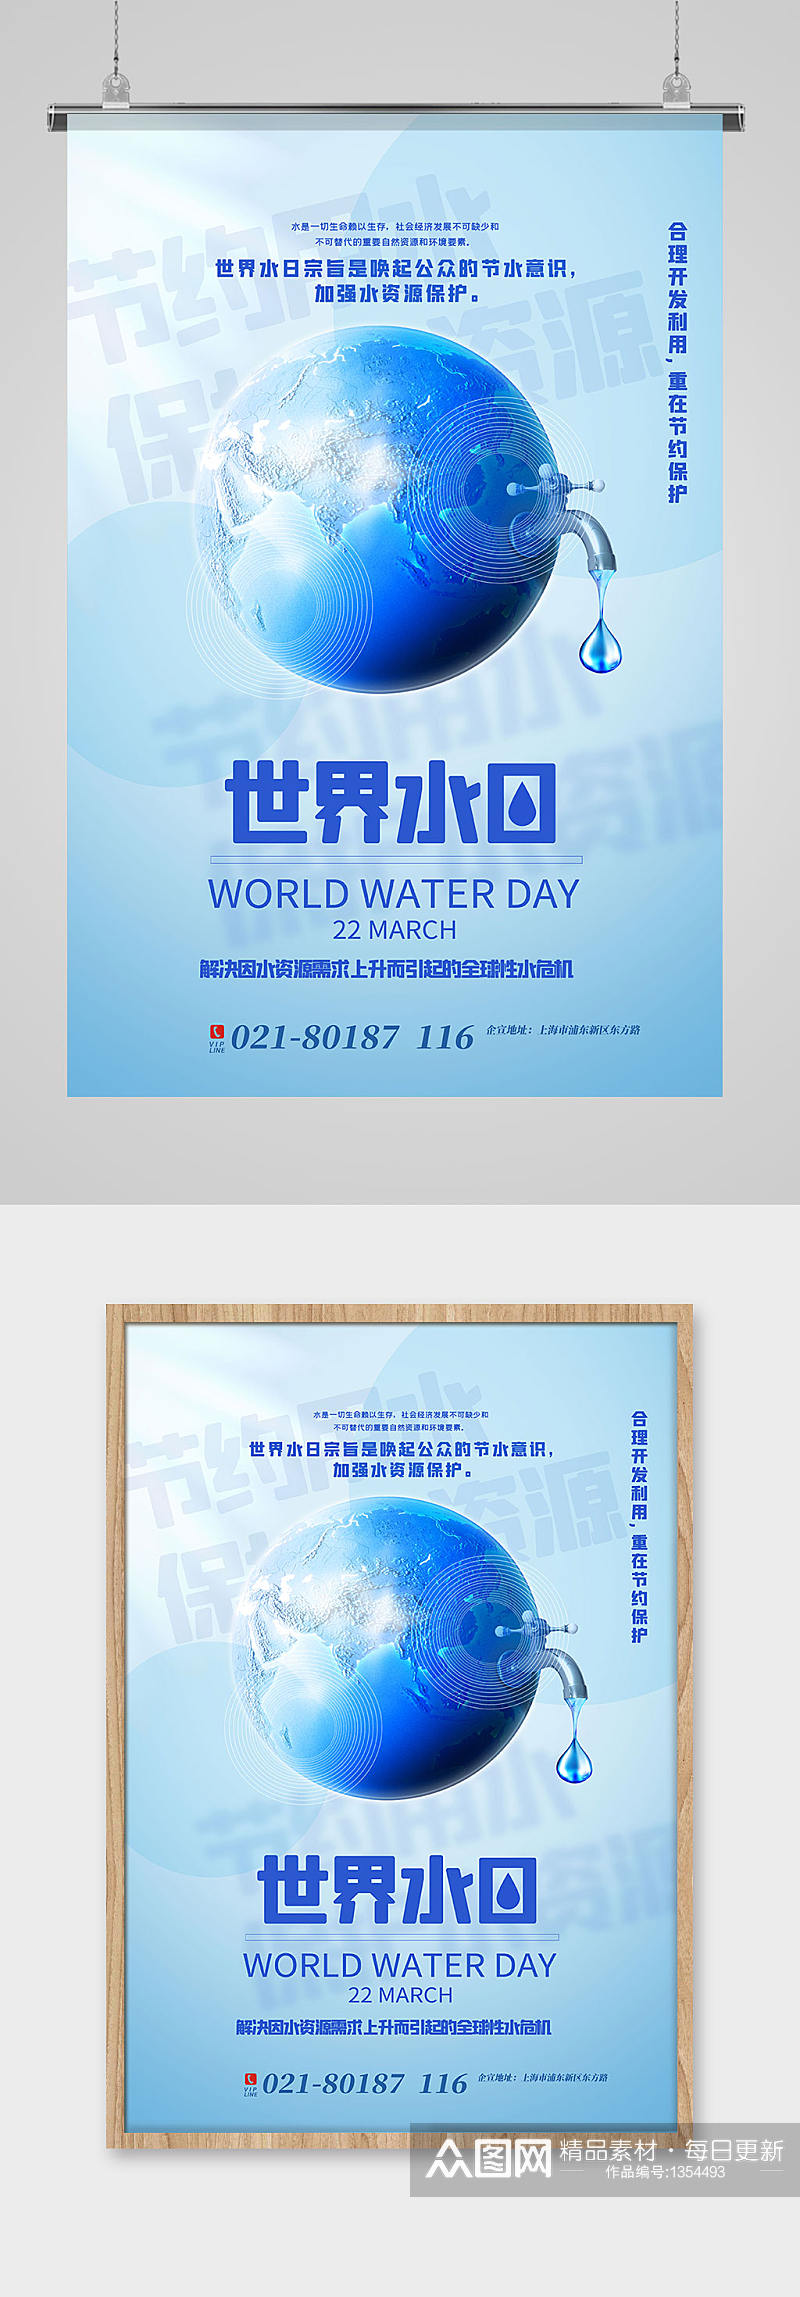 蓝色世界水日宣传海报素材